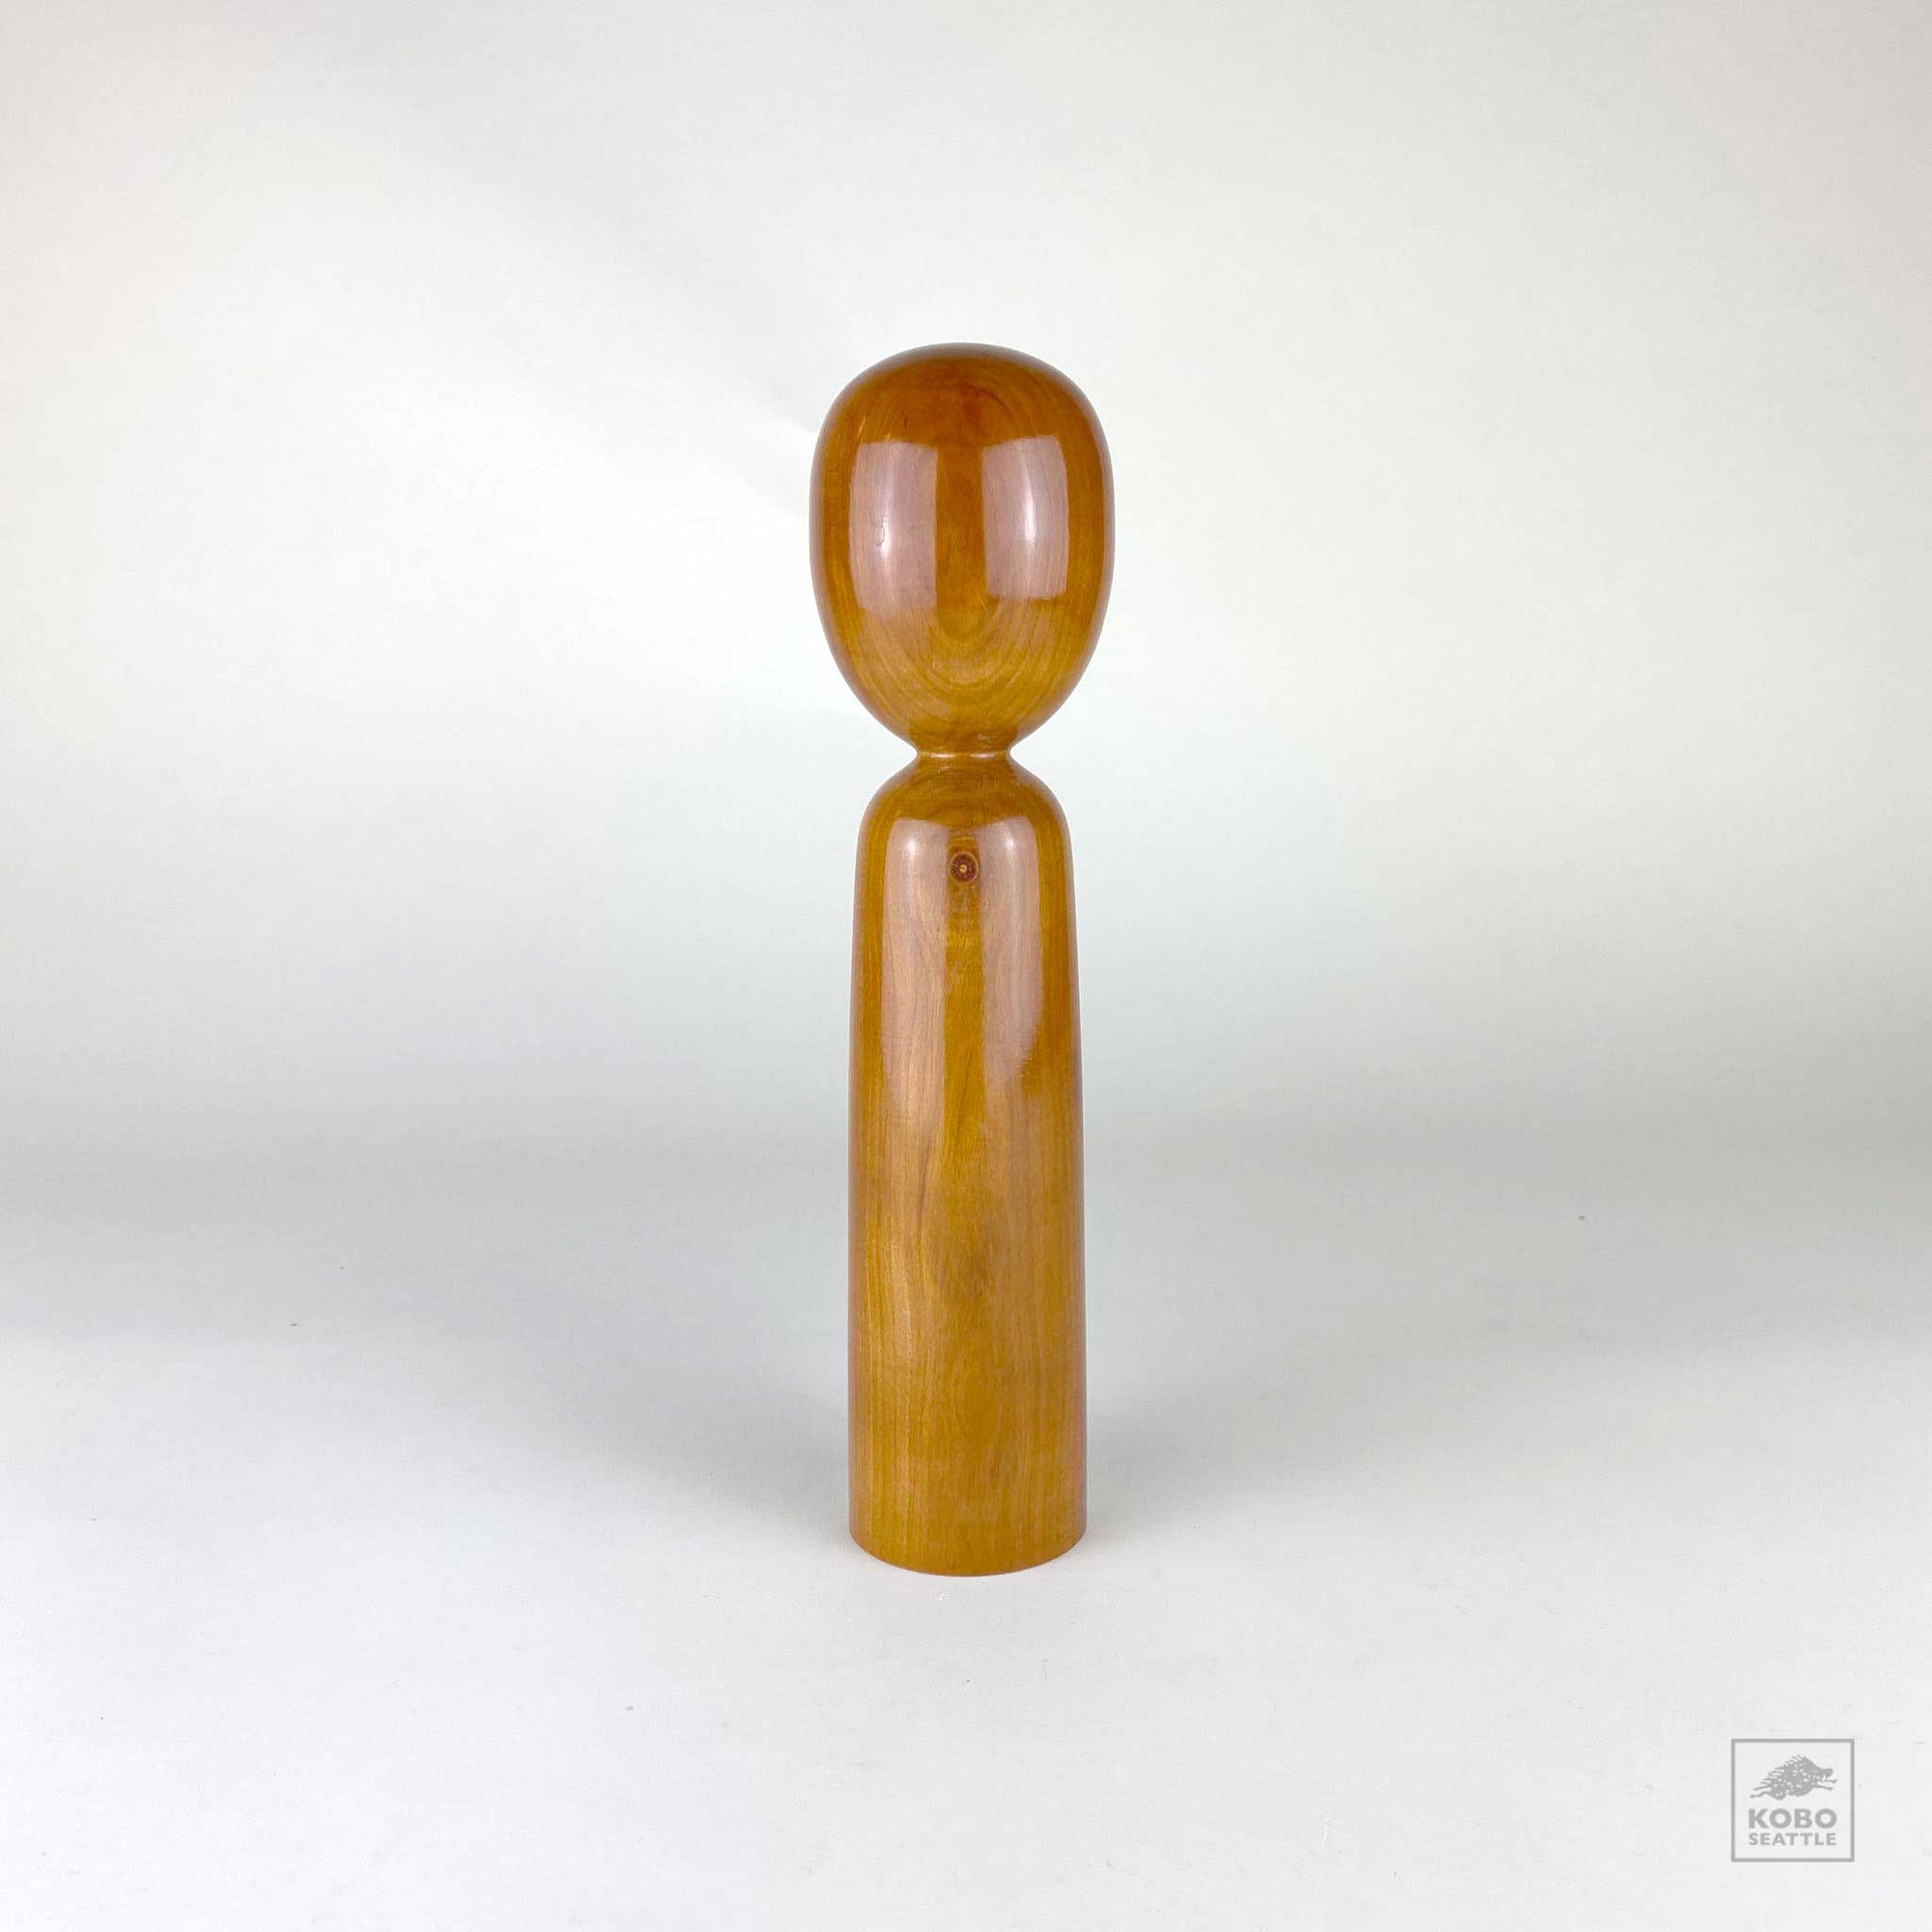 Wood Doll 01 by Steve Faiks